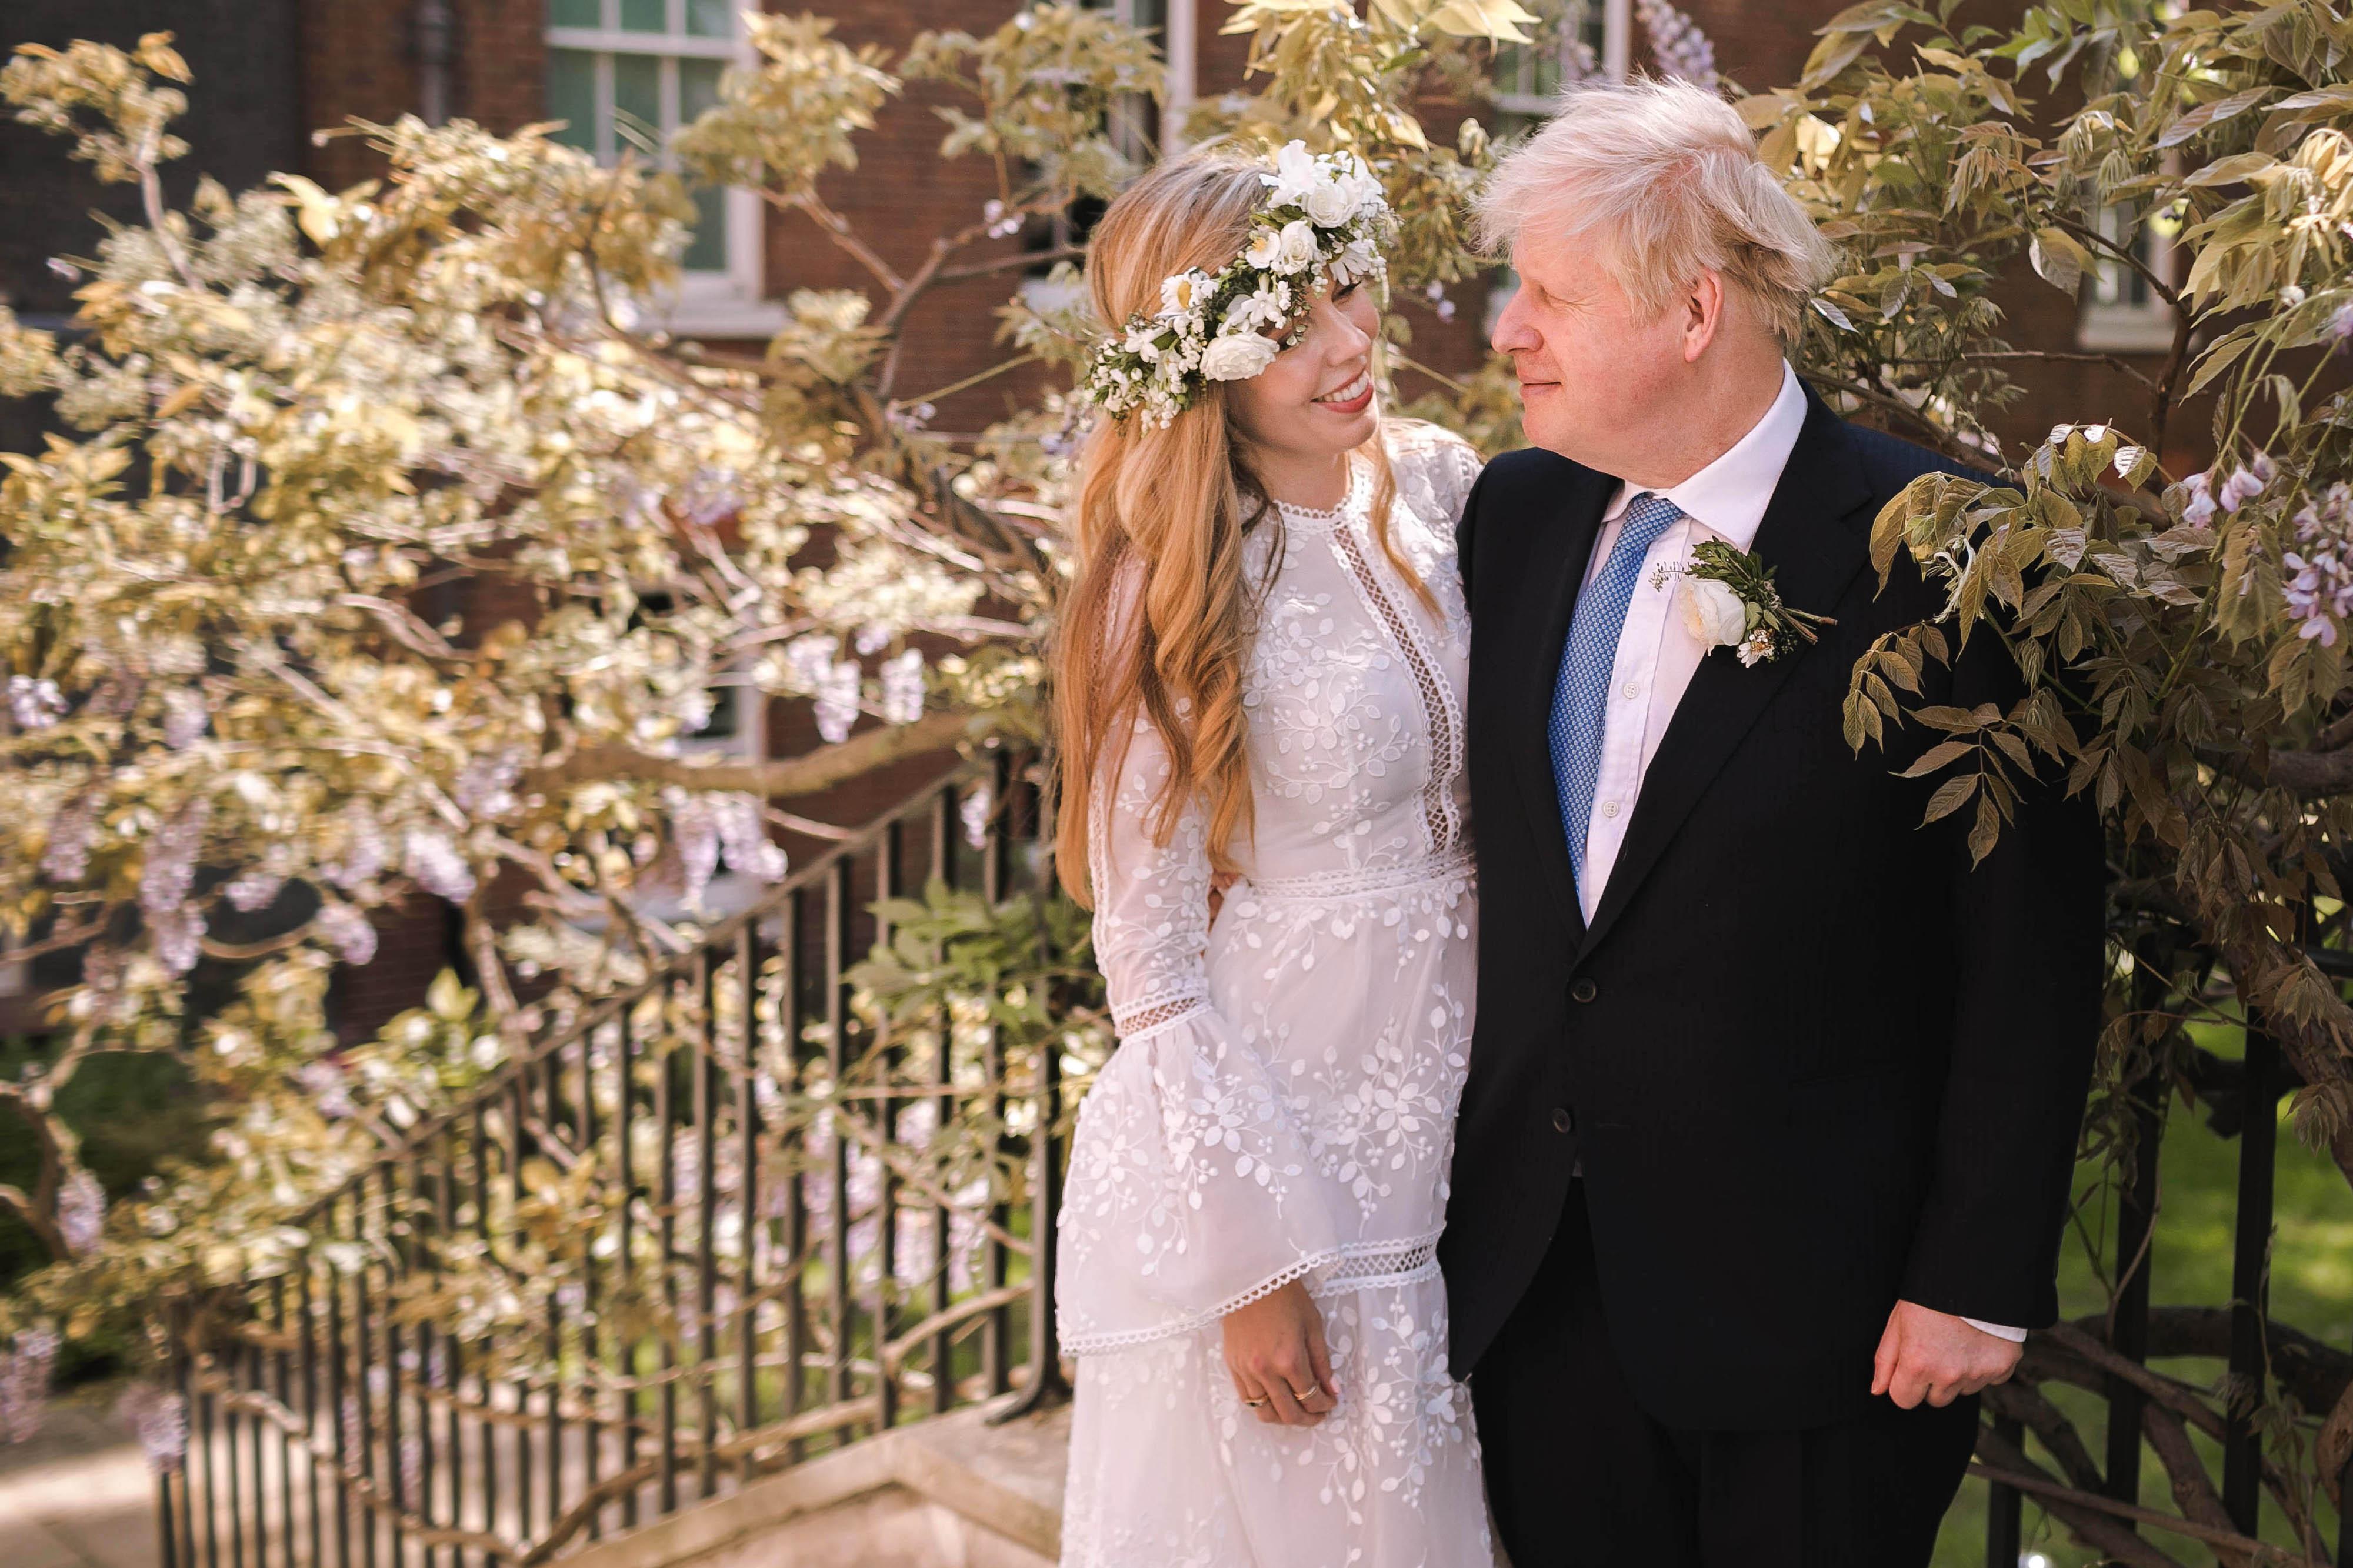 Boris Johnson met zijn echtgenote Carrie Symonds tijdens hun huwelijk in 2021. Johnson is de eerste Britse premier die huwt tijdens zijn ambtstijd in 200 jaar. 